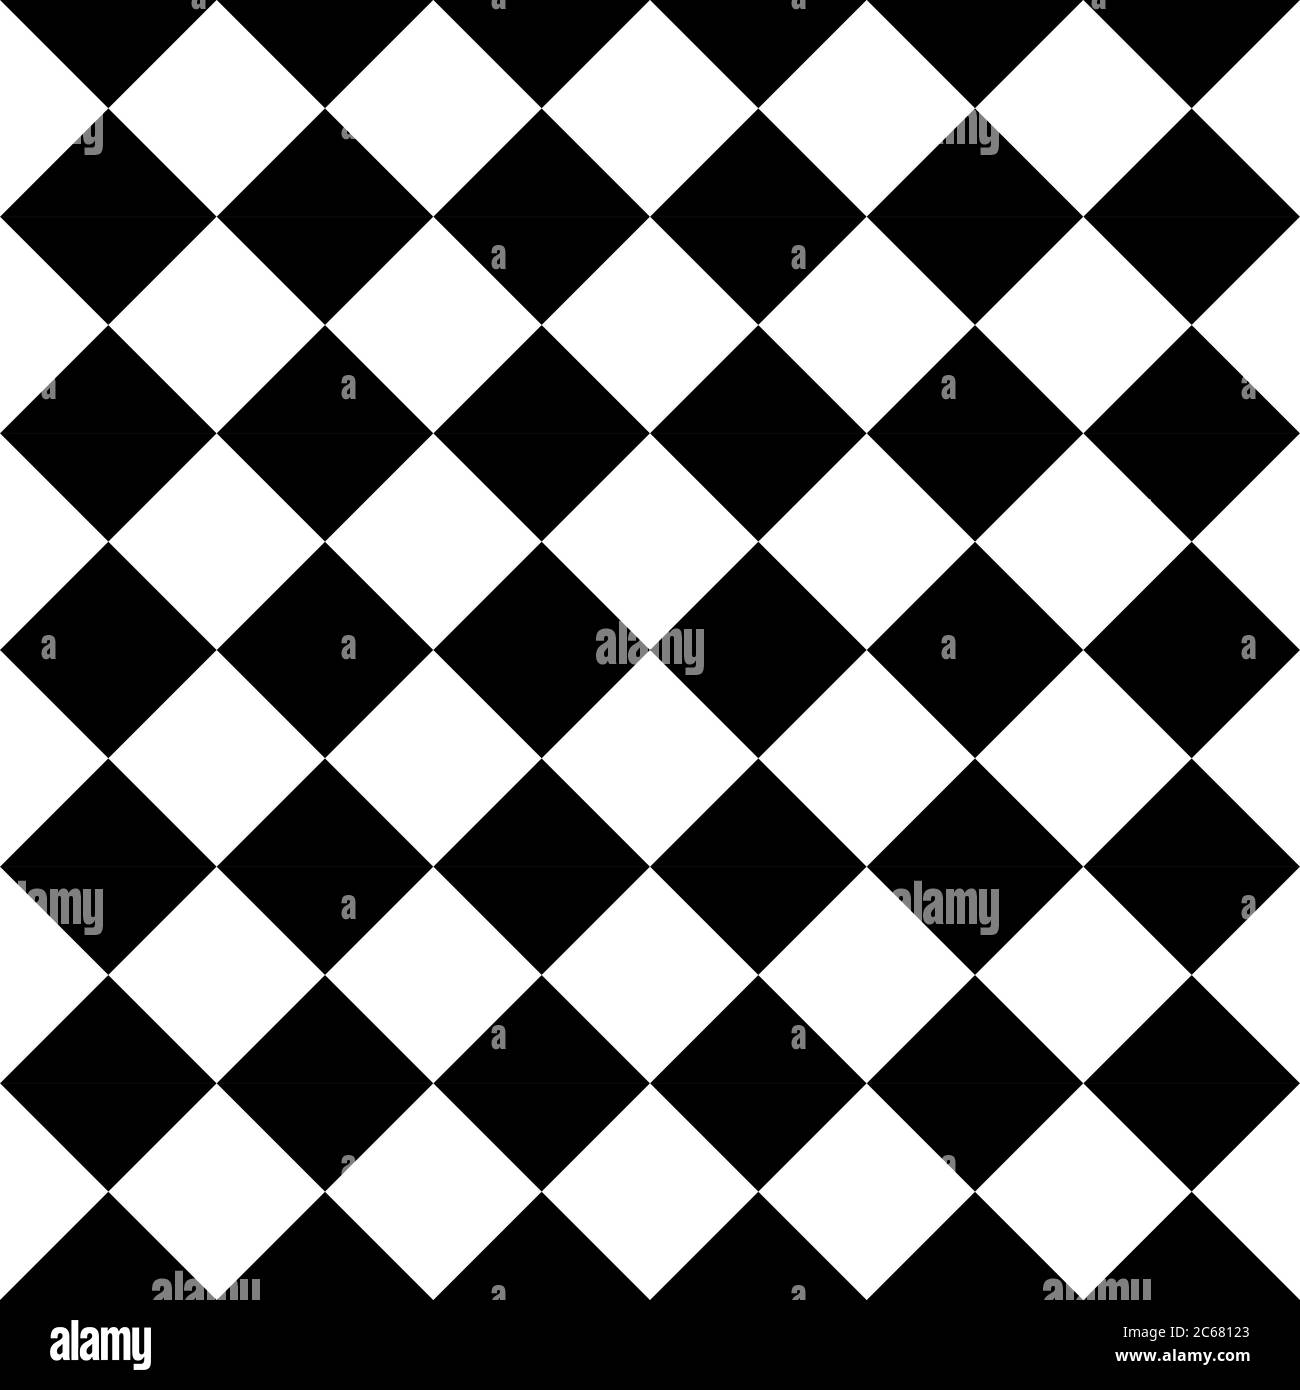 Motivo di sfondo senza giunture a scacchi di quadrati disposti diagonali.  Tema scacchi bianco e nero. Semplice illustrazione vettoriale piatta  geometrica e astratta Immagine e Vettoriale - Alamy